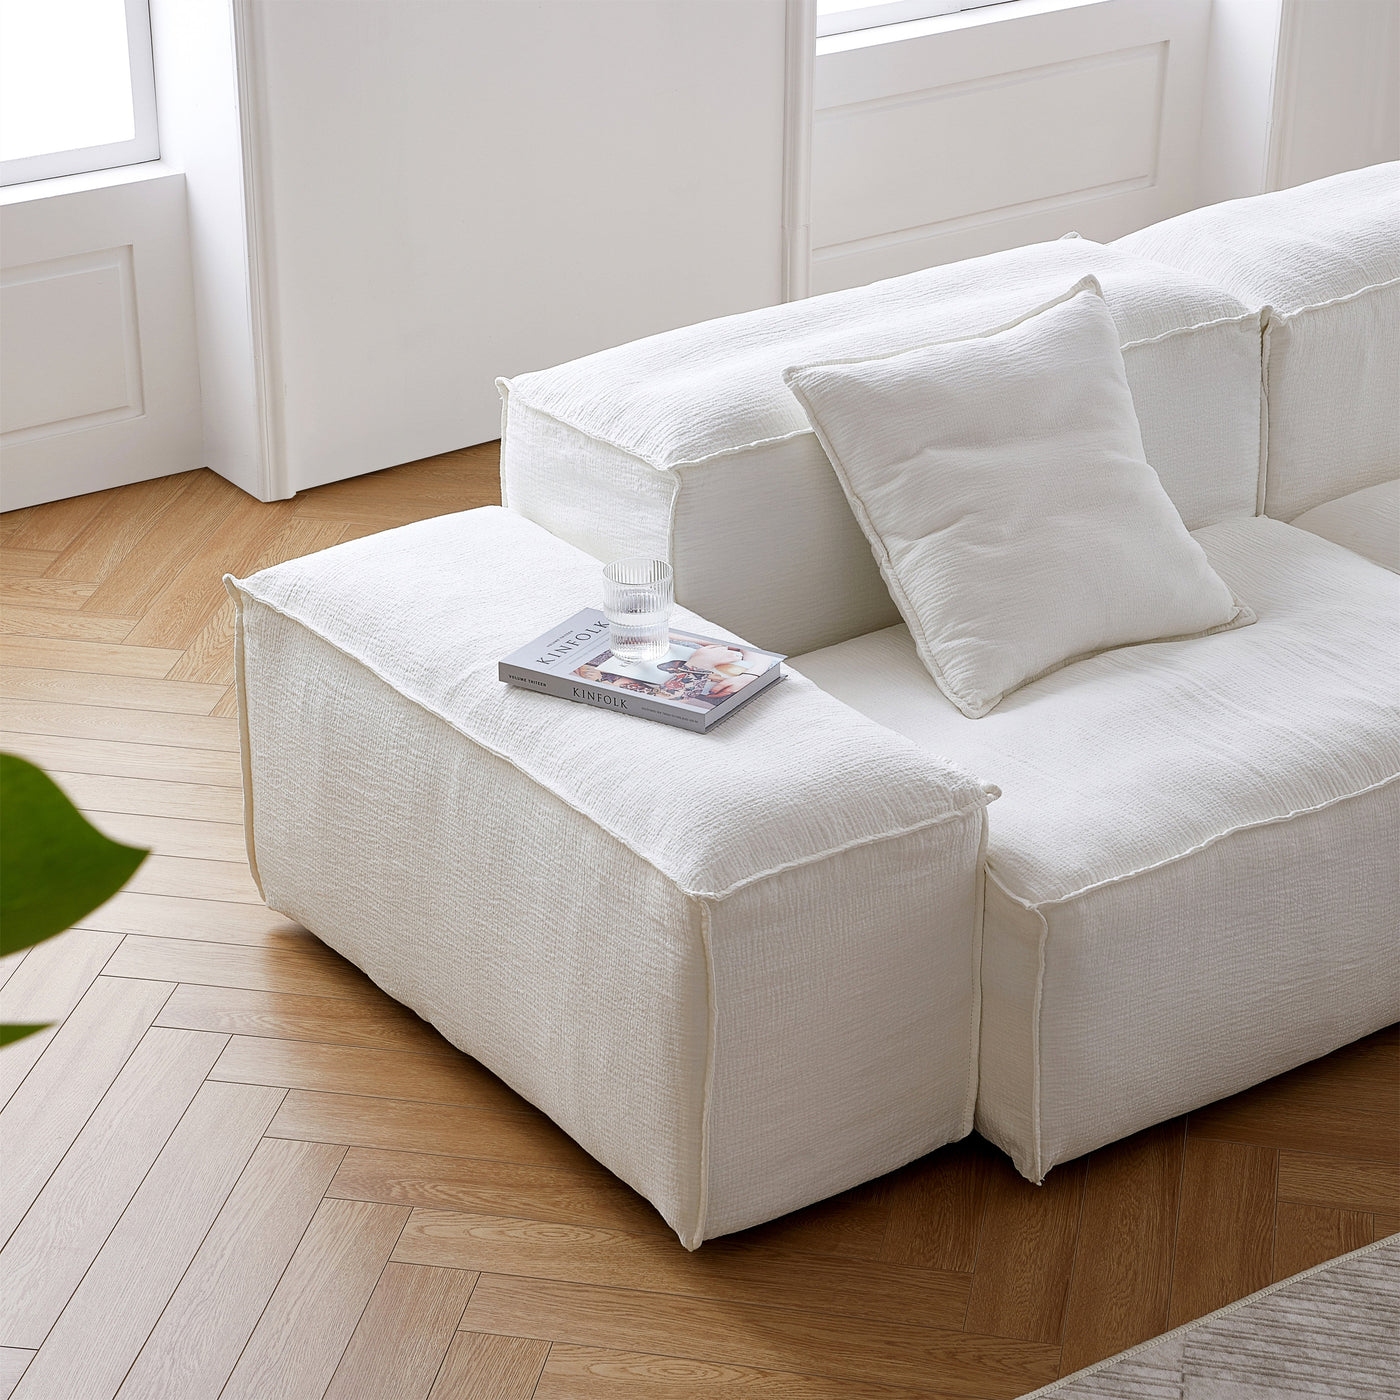 Freedom Modular Khaki Sectional Sofa-White